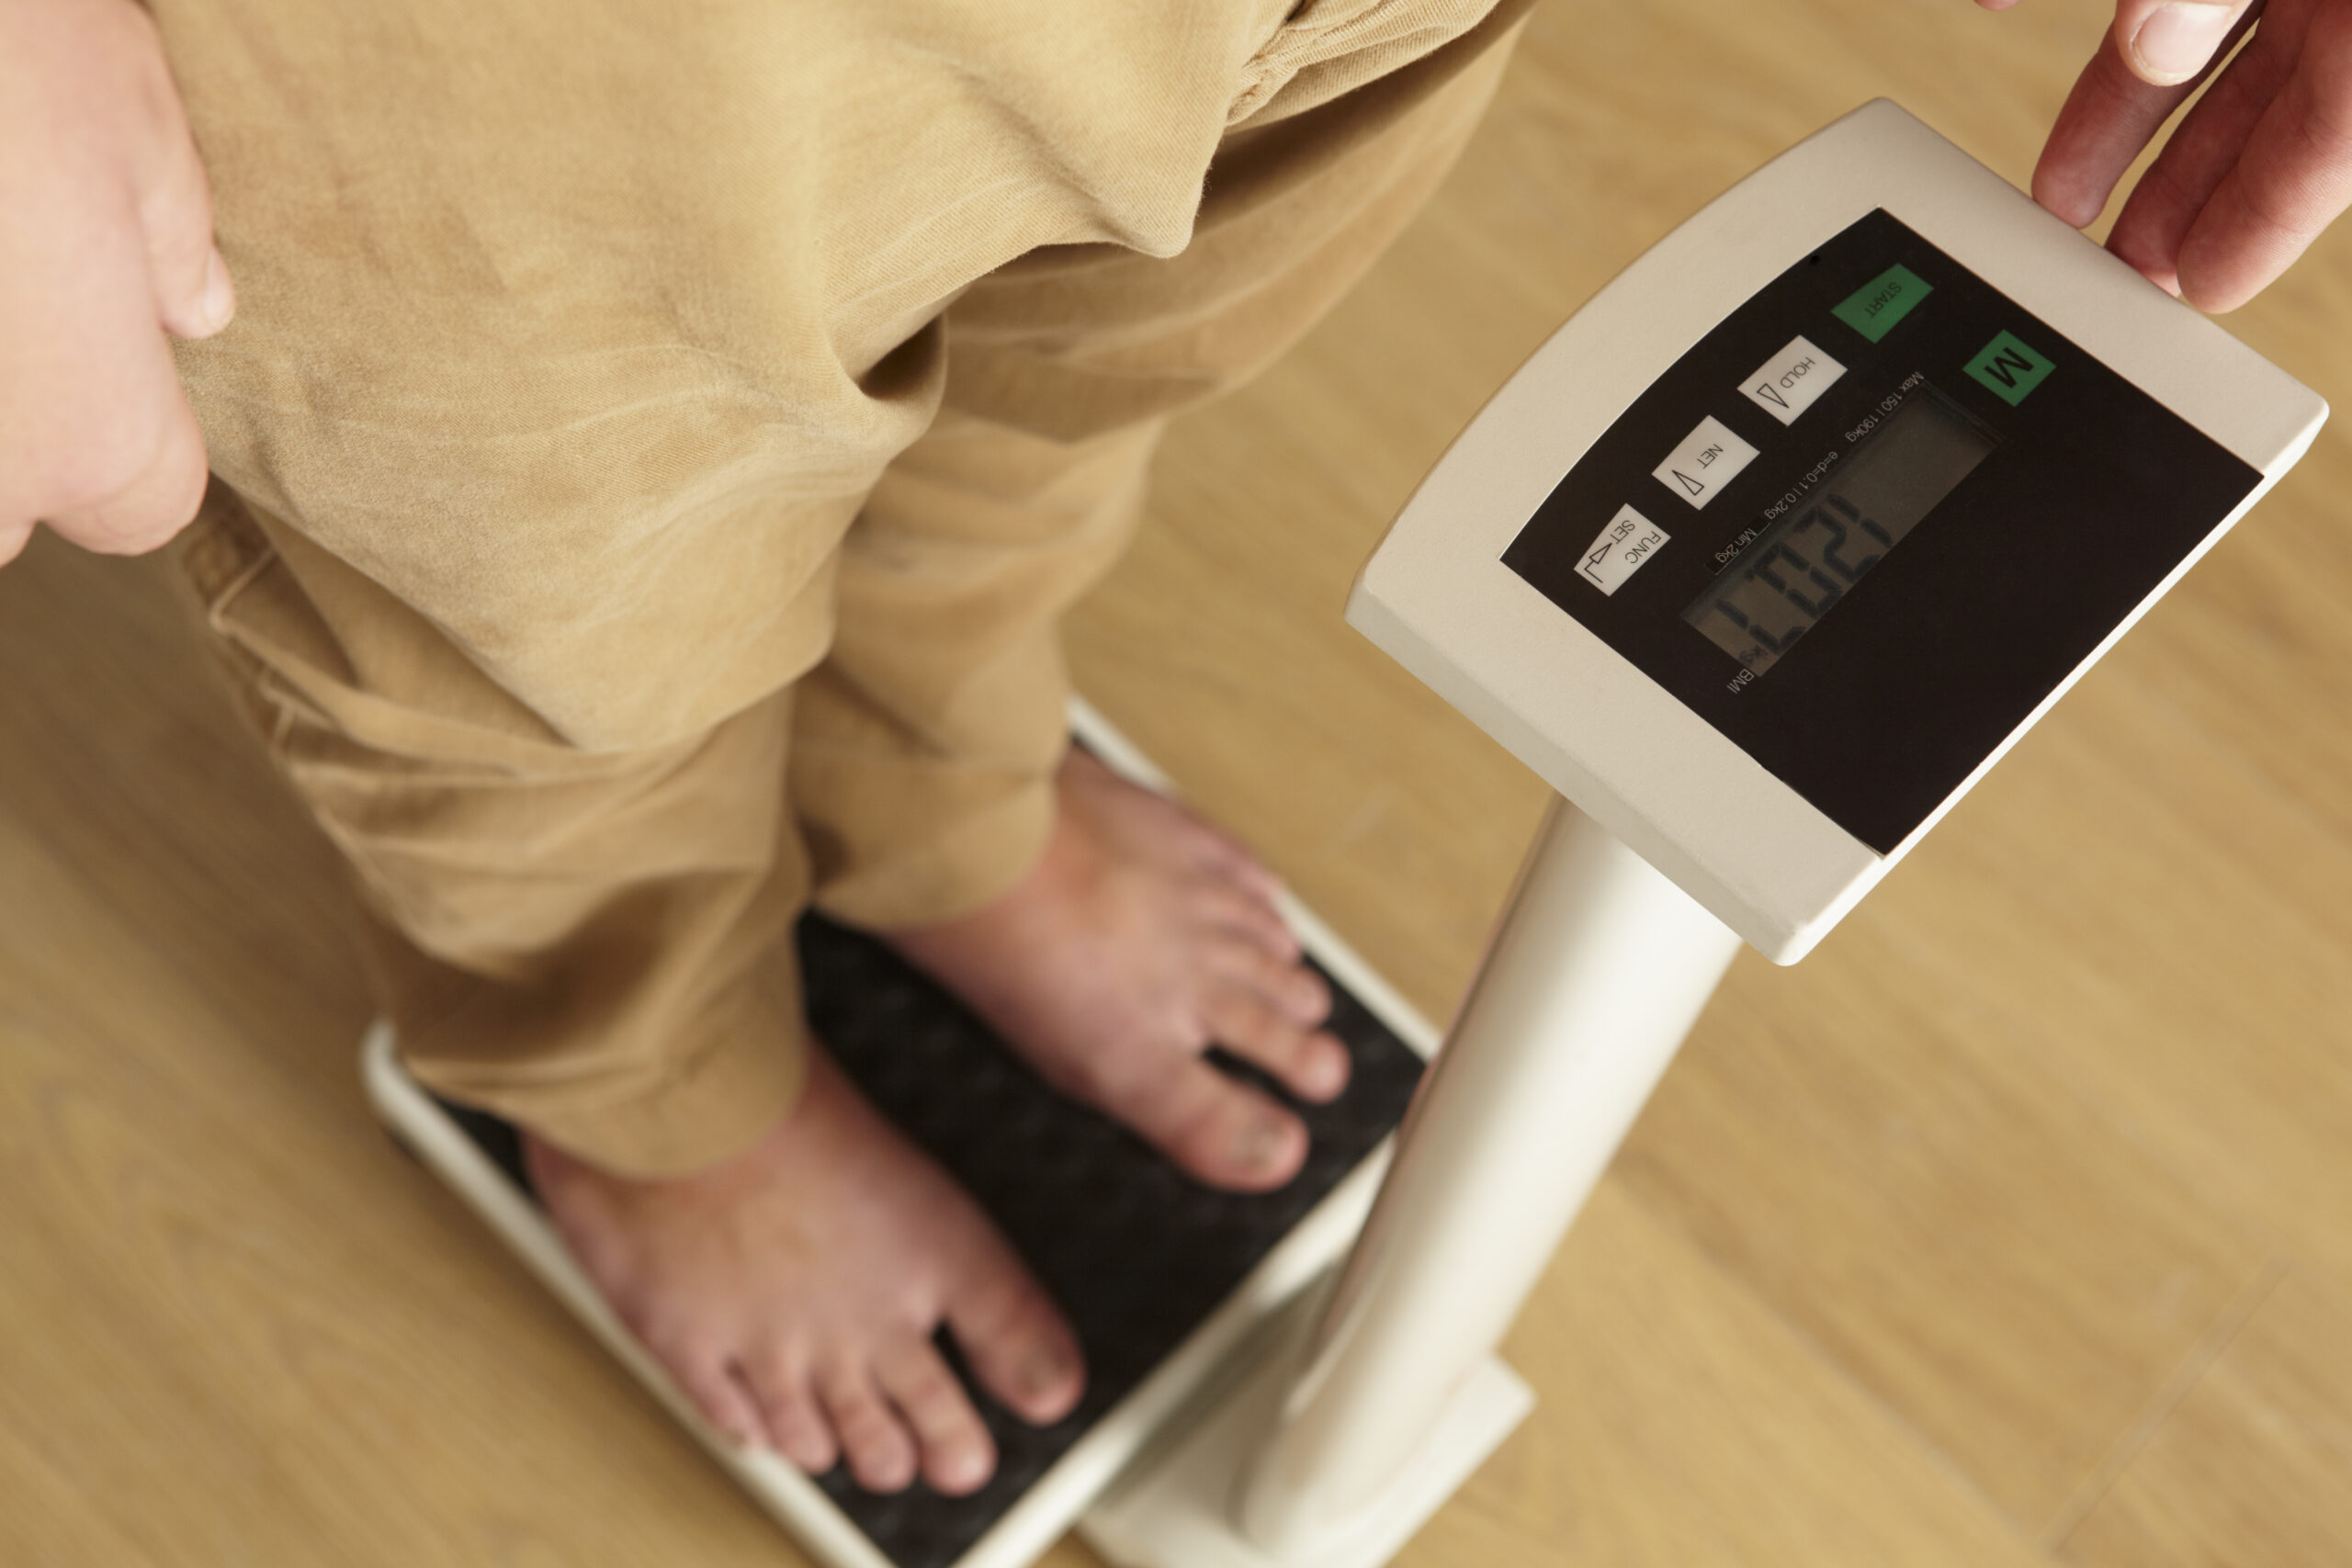 Hábito pode favorecer aumento de peso, segundo estudo